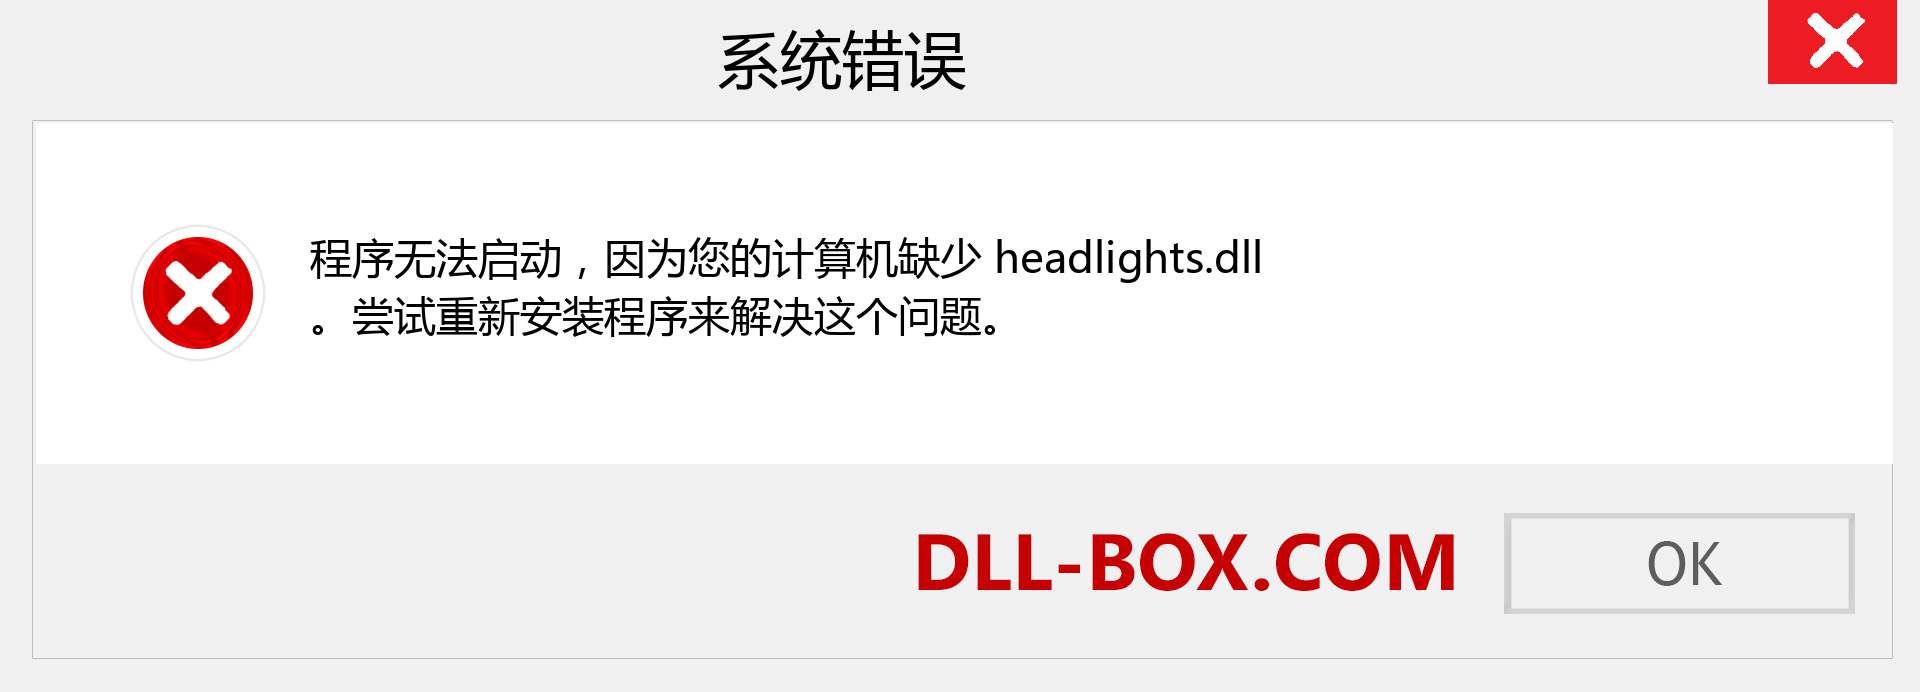 headlights.dll 文件丢失？。 适用于 Windows 7、8、10 的下载 - 修复 Windows、照片、图像上的 headlights dll 丢失错误